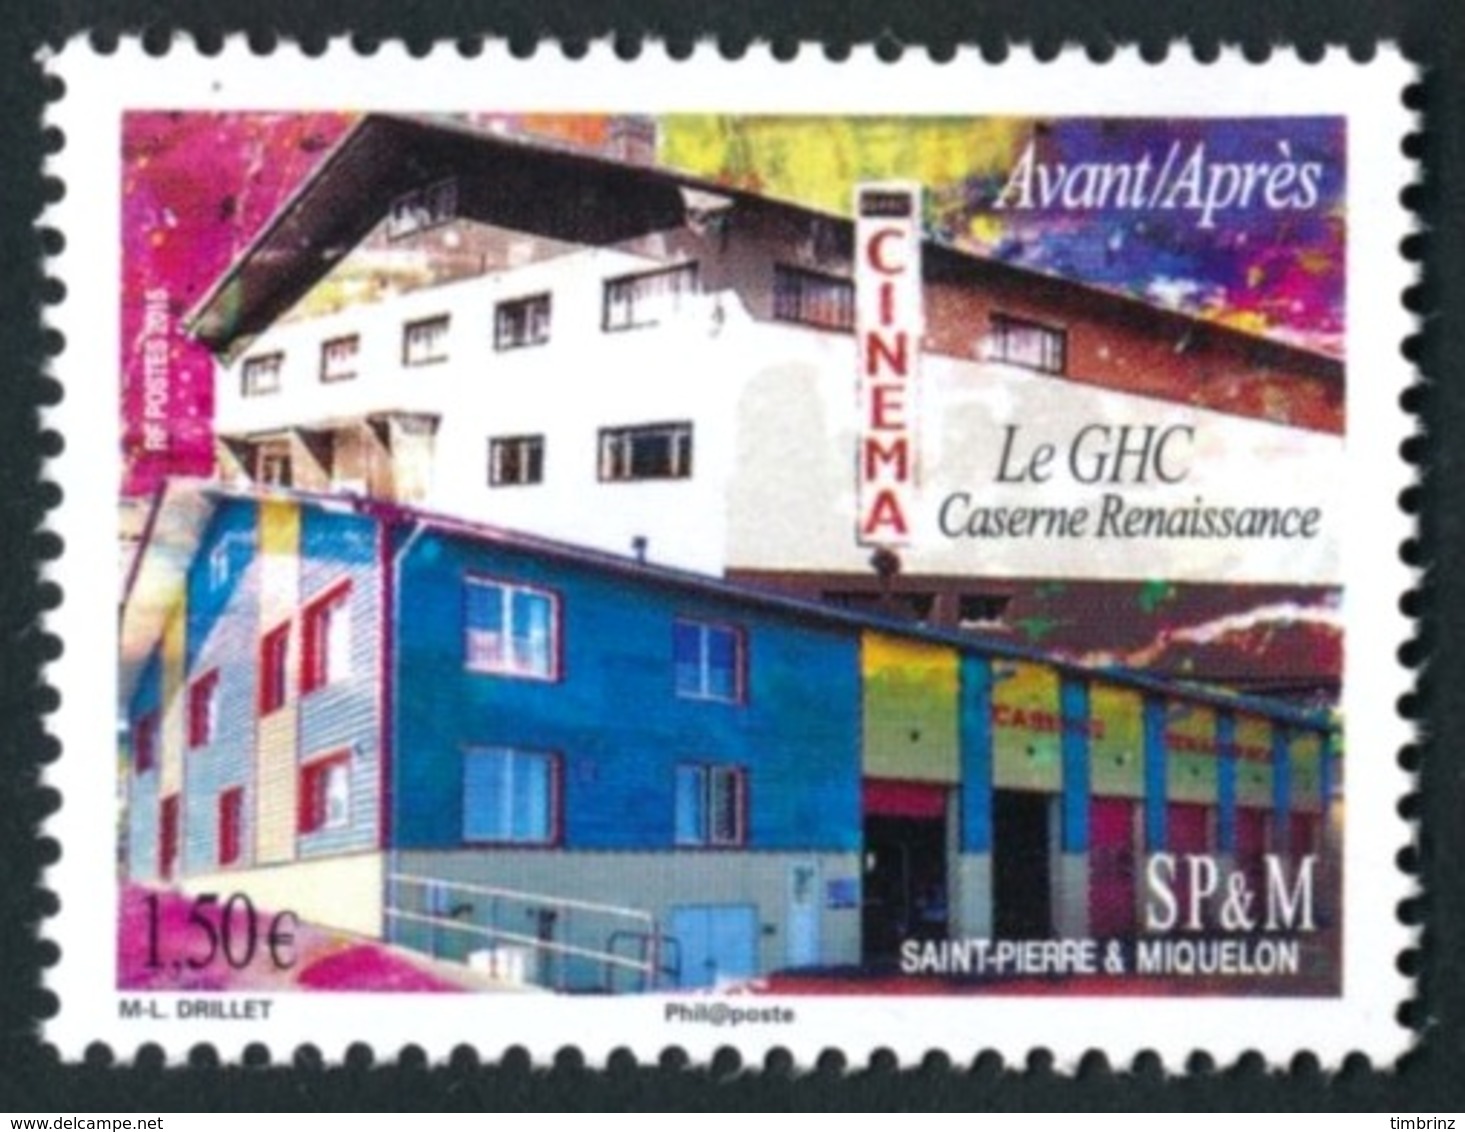 ST-PIERRE ET MIQUELON 2015 - Yv. 1132 **  - Architecture. GHC/Caserne Renaissance (avant-après)  ..Réf.SPM11500 - Unused Stamps